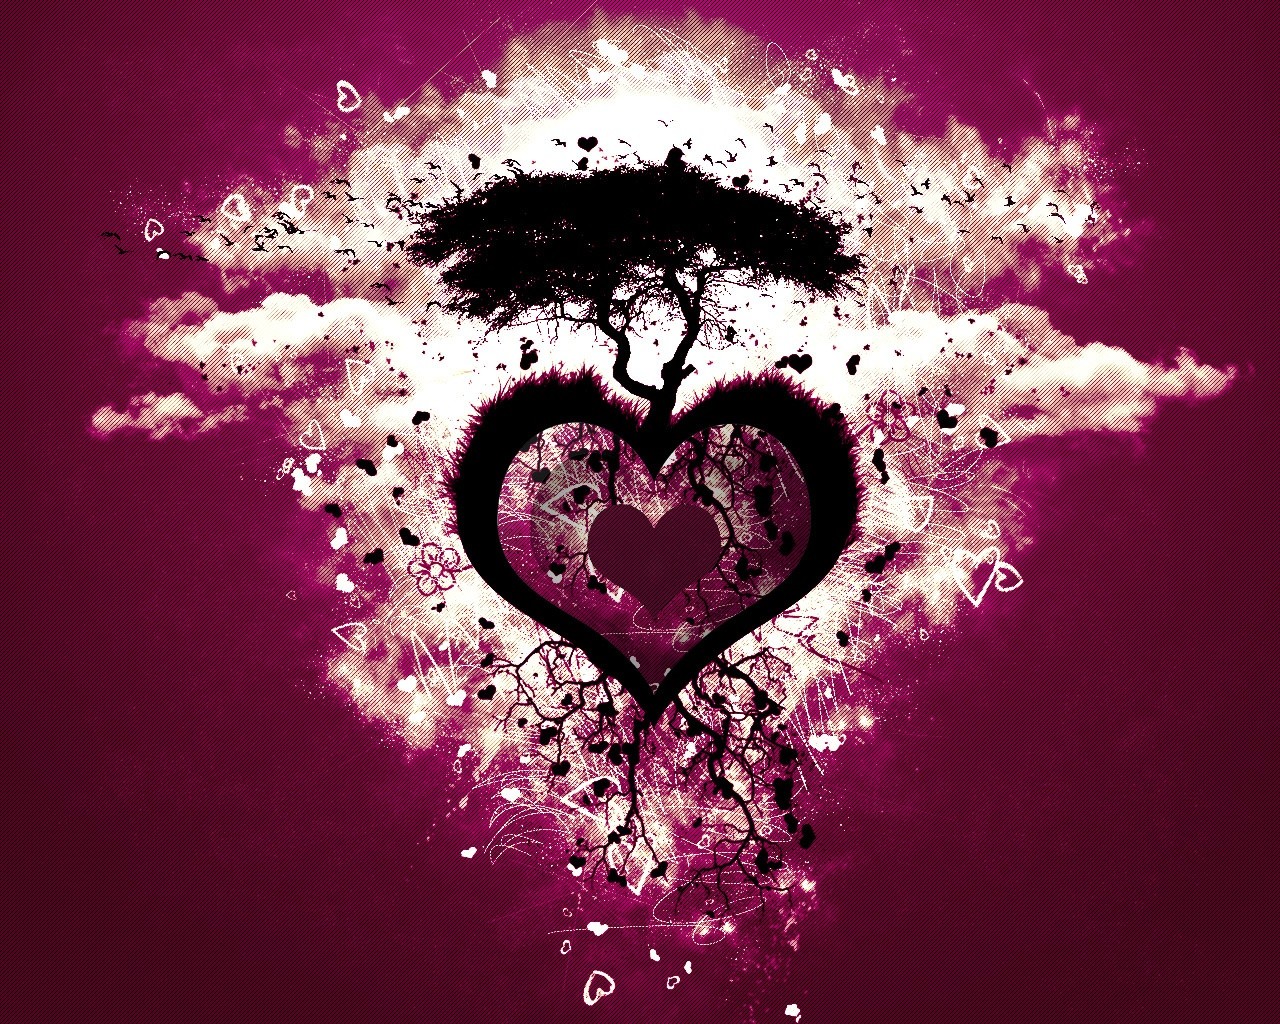 3d обои Большое сердце (из сердца вдруг вырастает дерево, на кроне которого появляются гнёзда, из которых вылетают птицы)  птицы # 76189